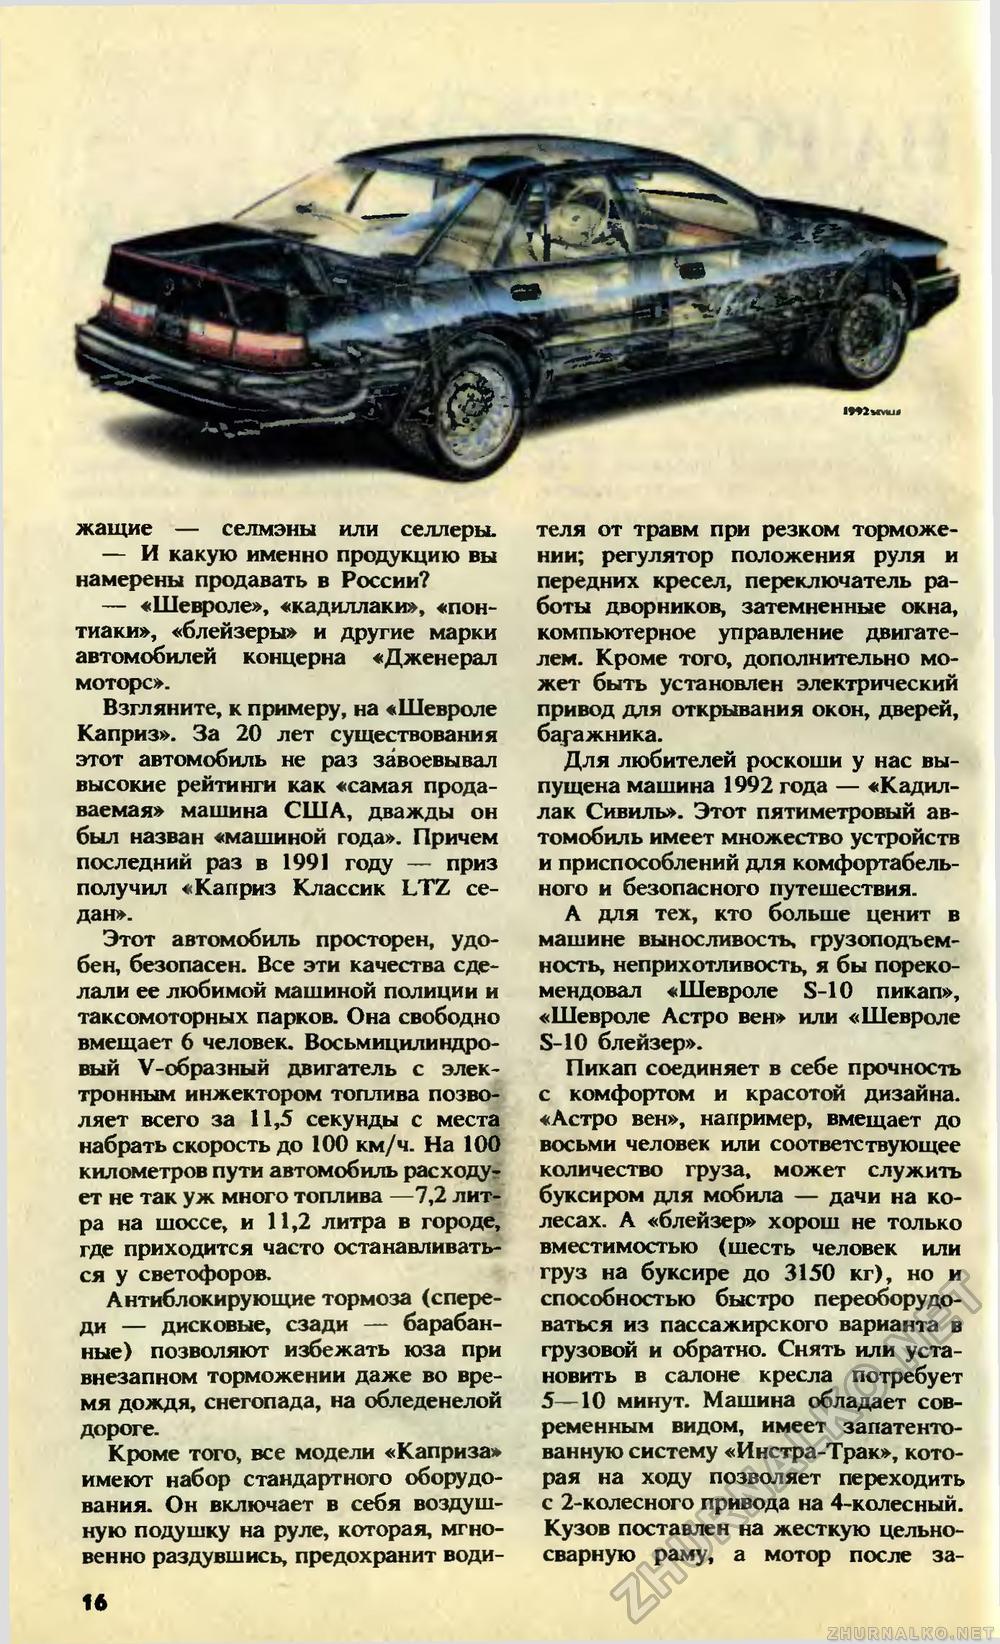   1992-10,  18